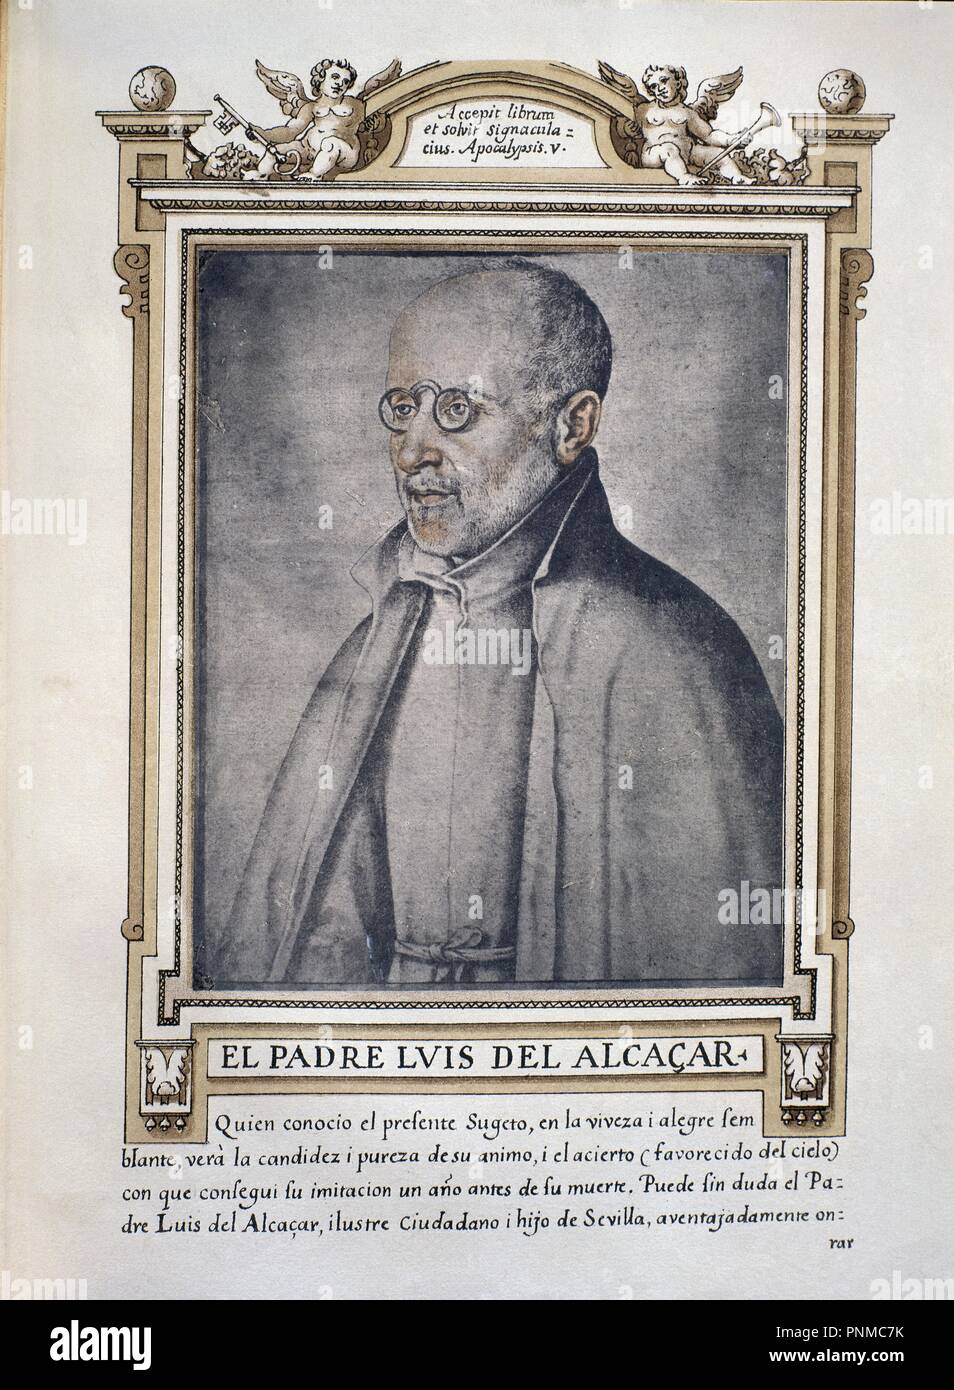 LUIS DE ALCAZAR - LIBRO DE RETRATOS DE ILUSTRES Y MEMORABLES VARONES - 1599. Author: PACHECO, FRANCISCO. Location: BIBLIOTECA NACIONAL-COLECCION. MADRID. SPAIN. Stock Photo